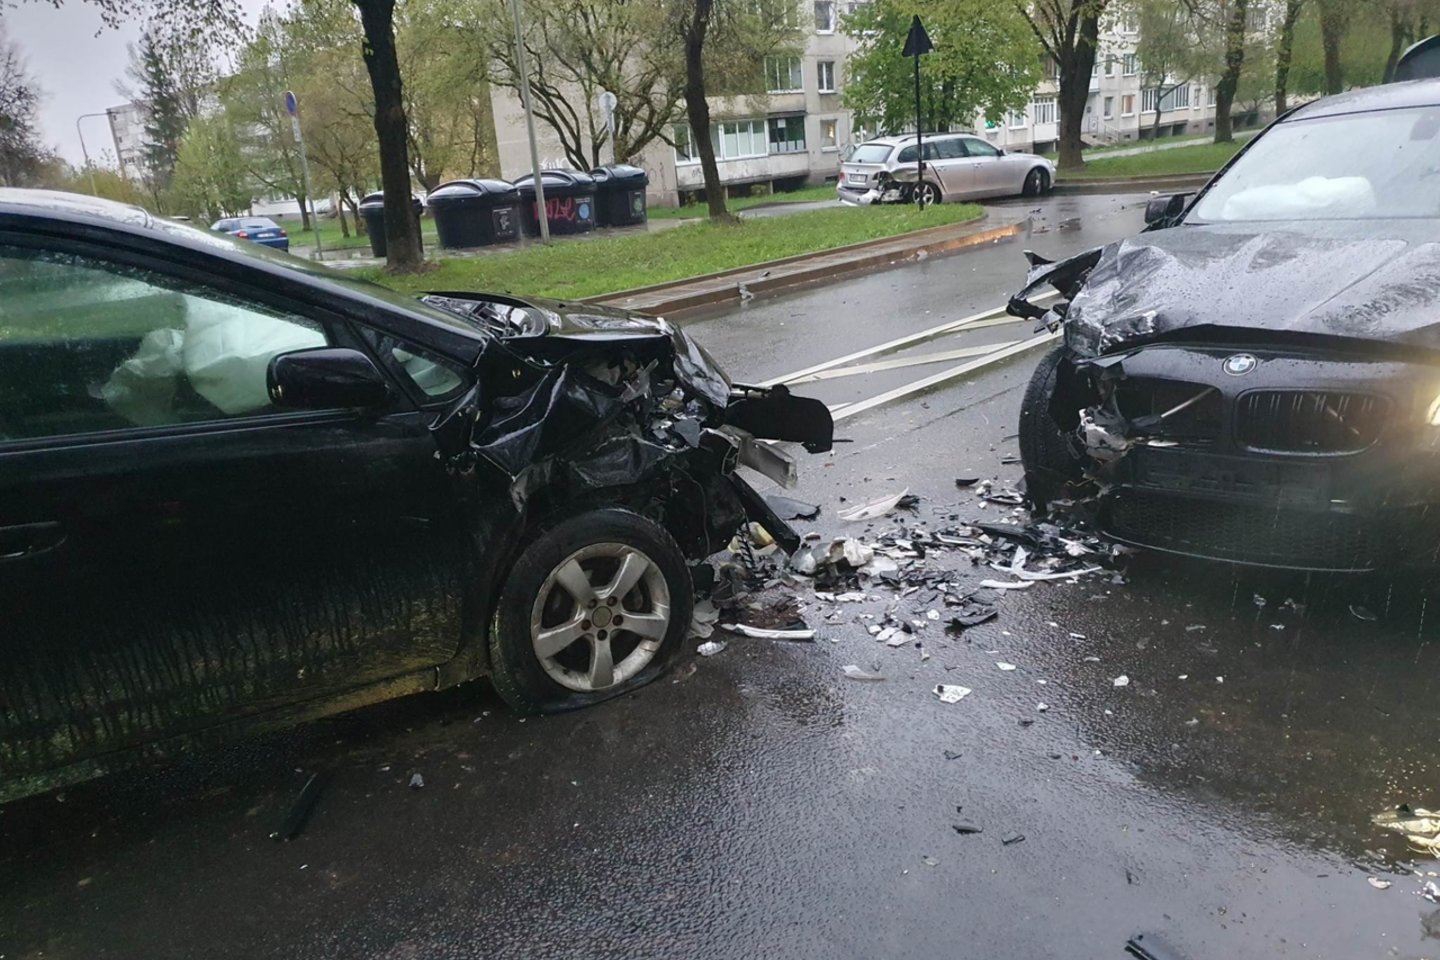 Vilniuje per eismo įvyki susidūrė 3 automobiliai, vienas iš vairuotojų prie vairo sėdo būdamas girtas.<br>Įvykio liudininko nuotr.